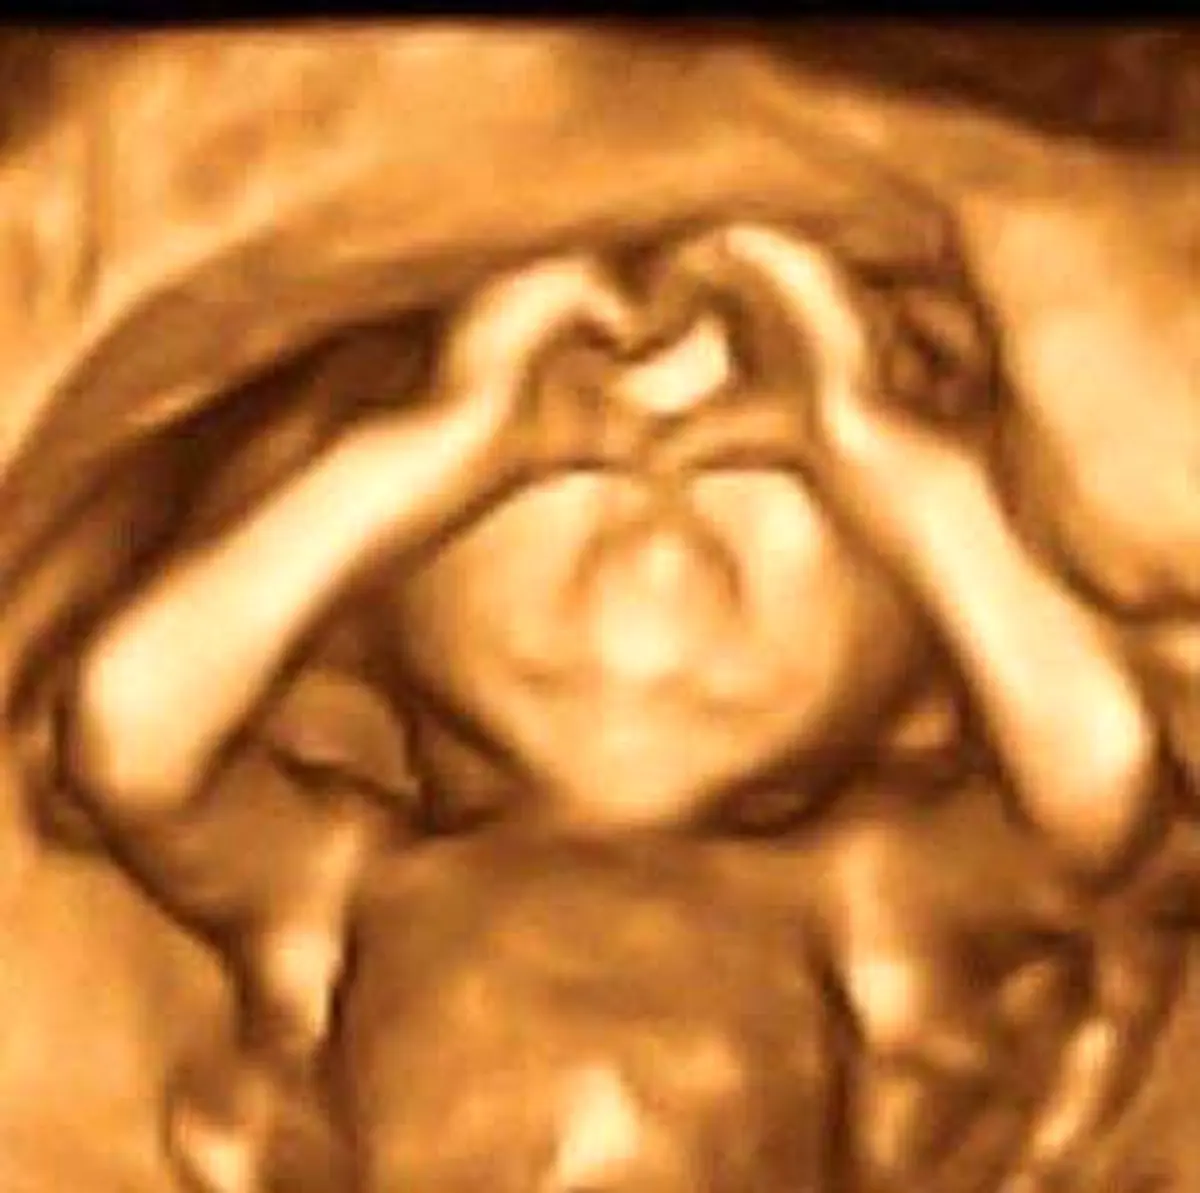 جنین درون شکم مادرش با ژستی جالب که به سوژه داغ بدل شد!+عکس